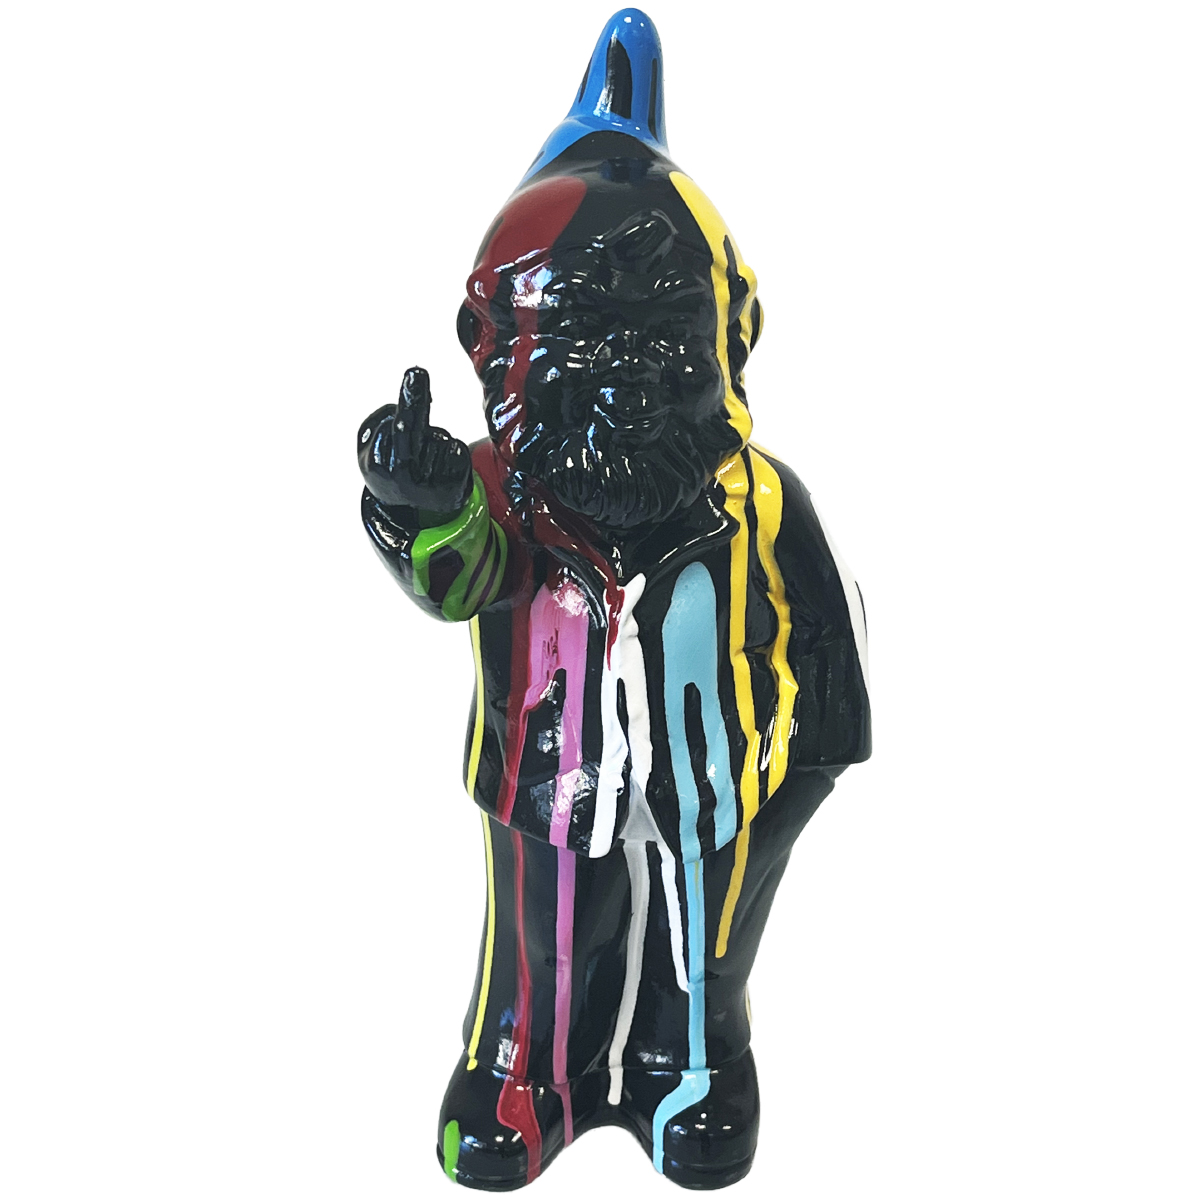 Statuette Lutin grossier noir en cramique finition multicolore